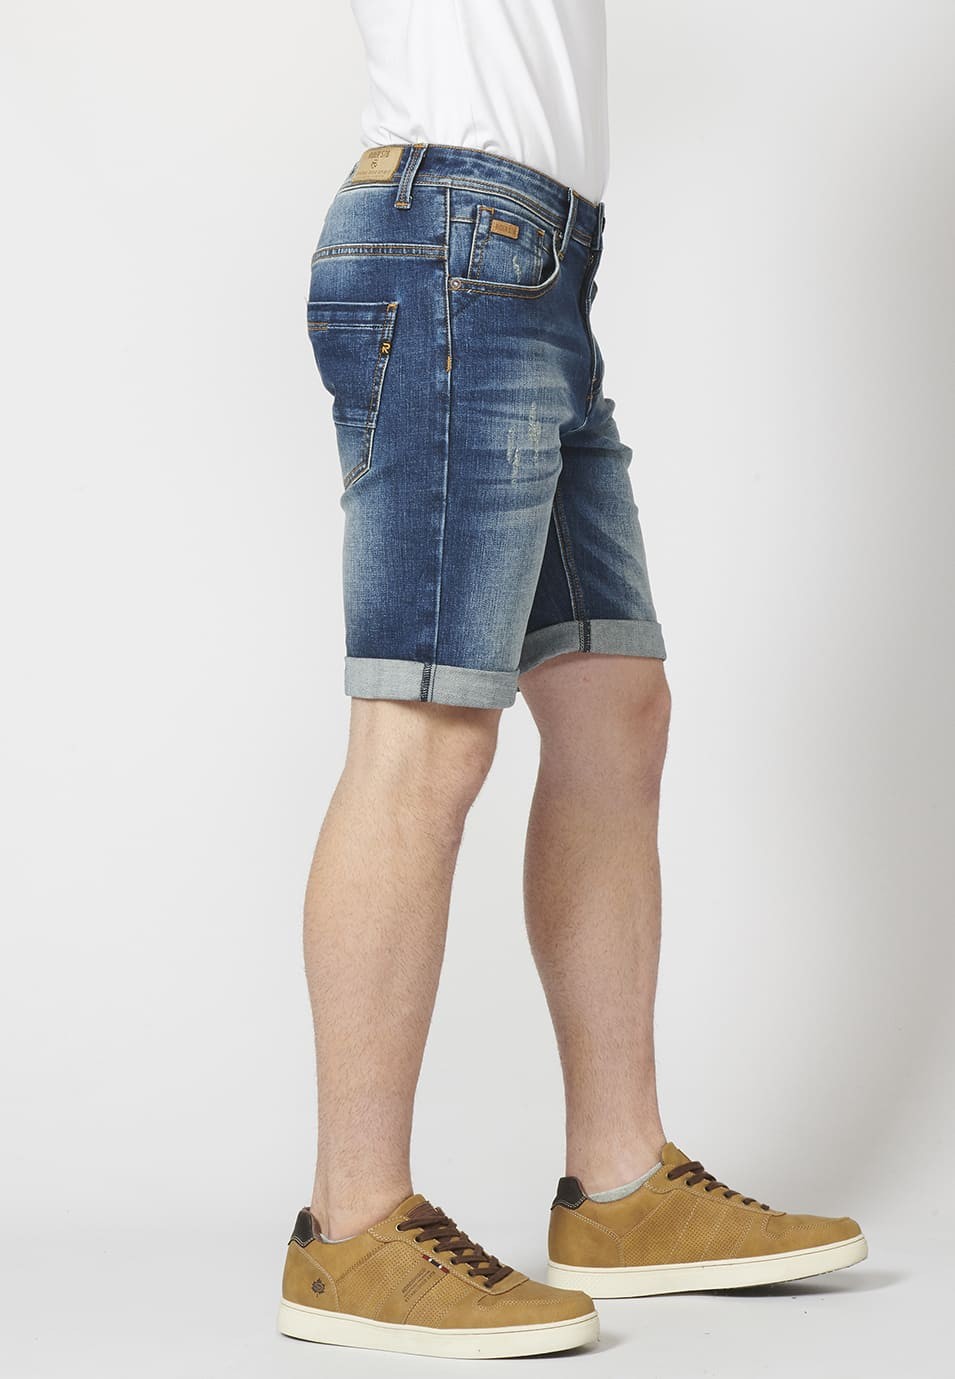 Pantalon corto denim regular fit con cinco bolsillos y efecto gastado para Hombre 3